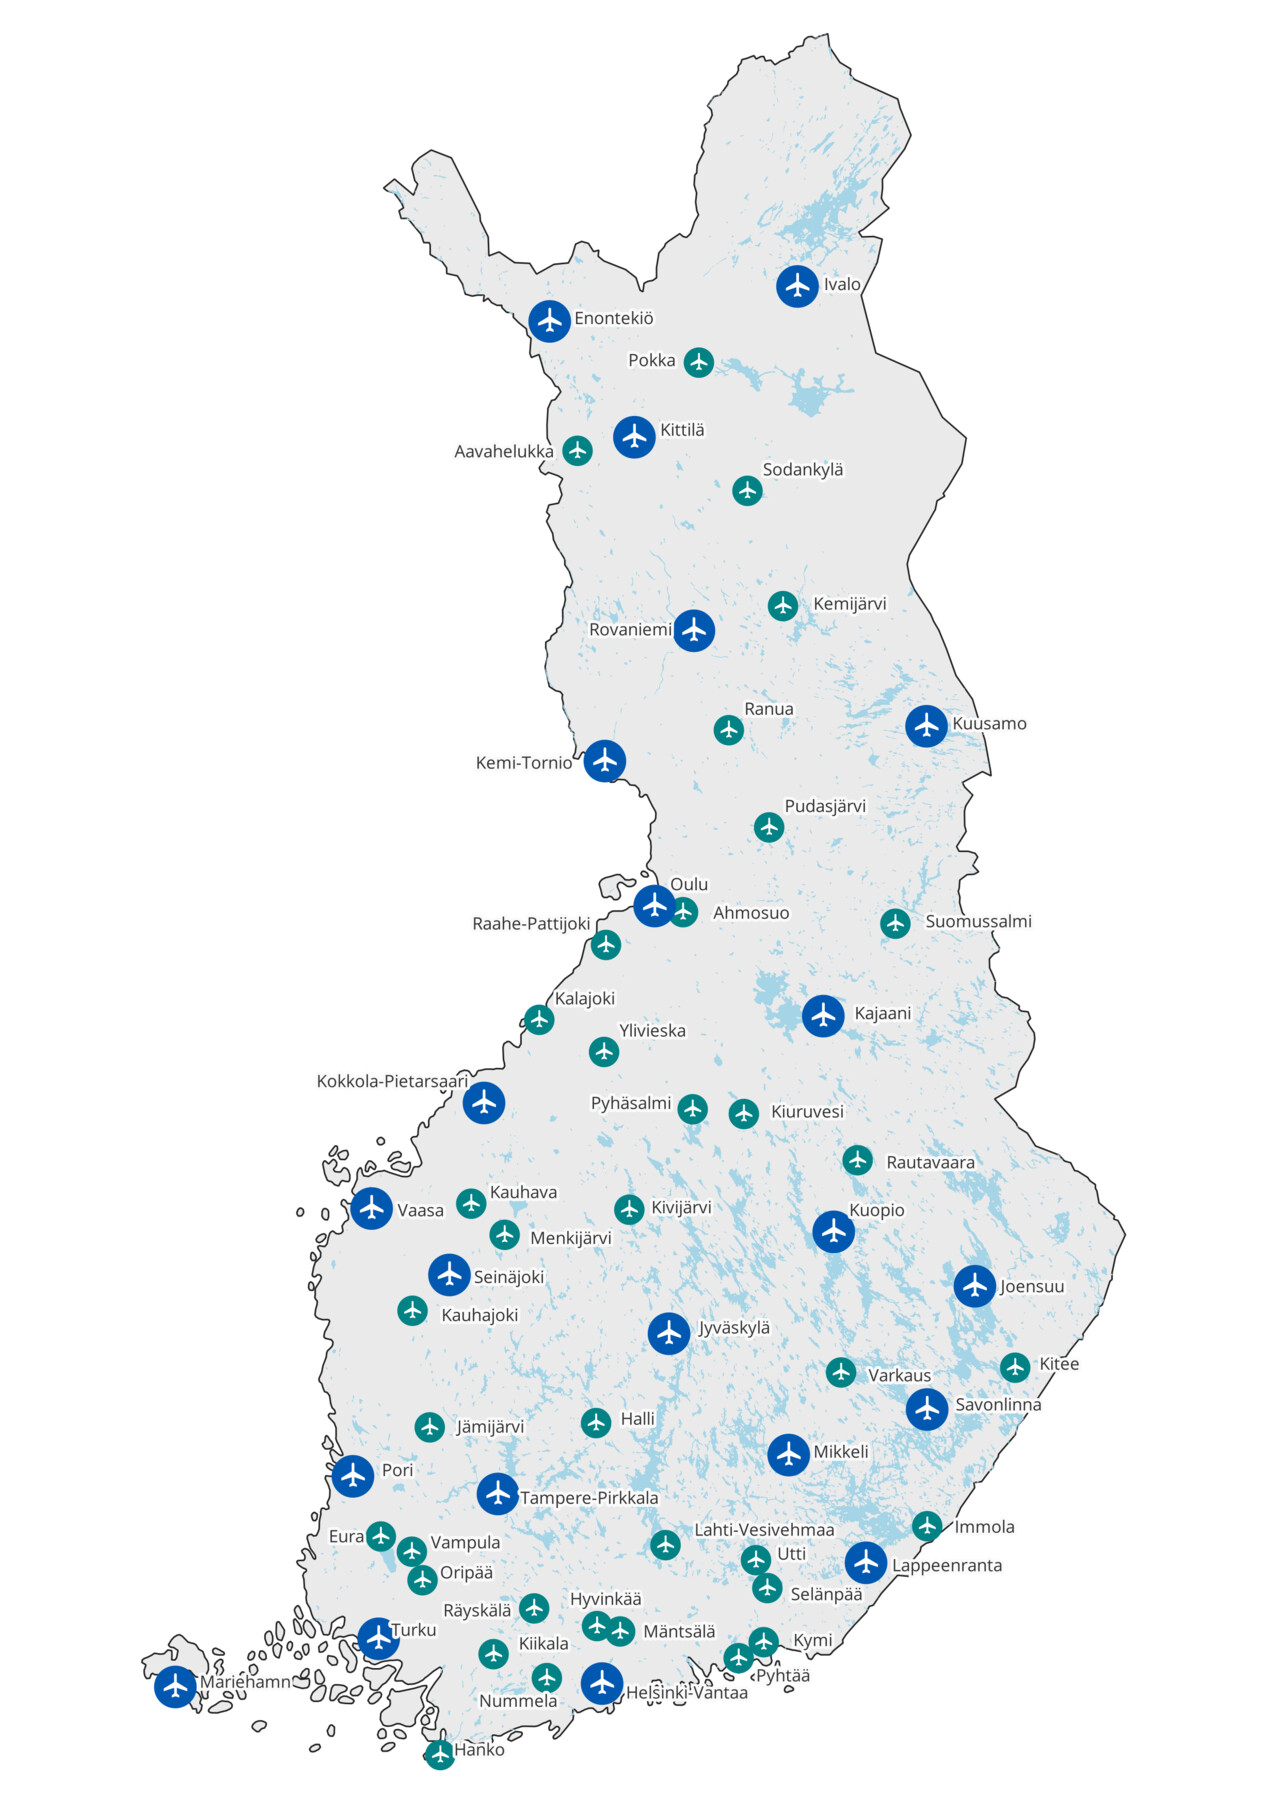 Suomen kartalla ne lentoasemat ja lentopaikat, joiden kiitotien pituus on yli 800m